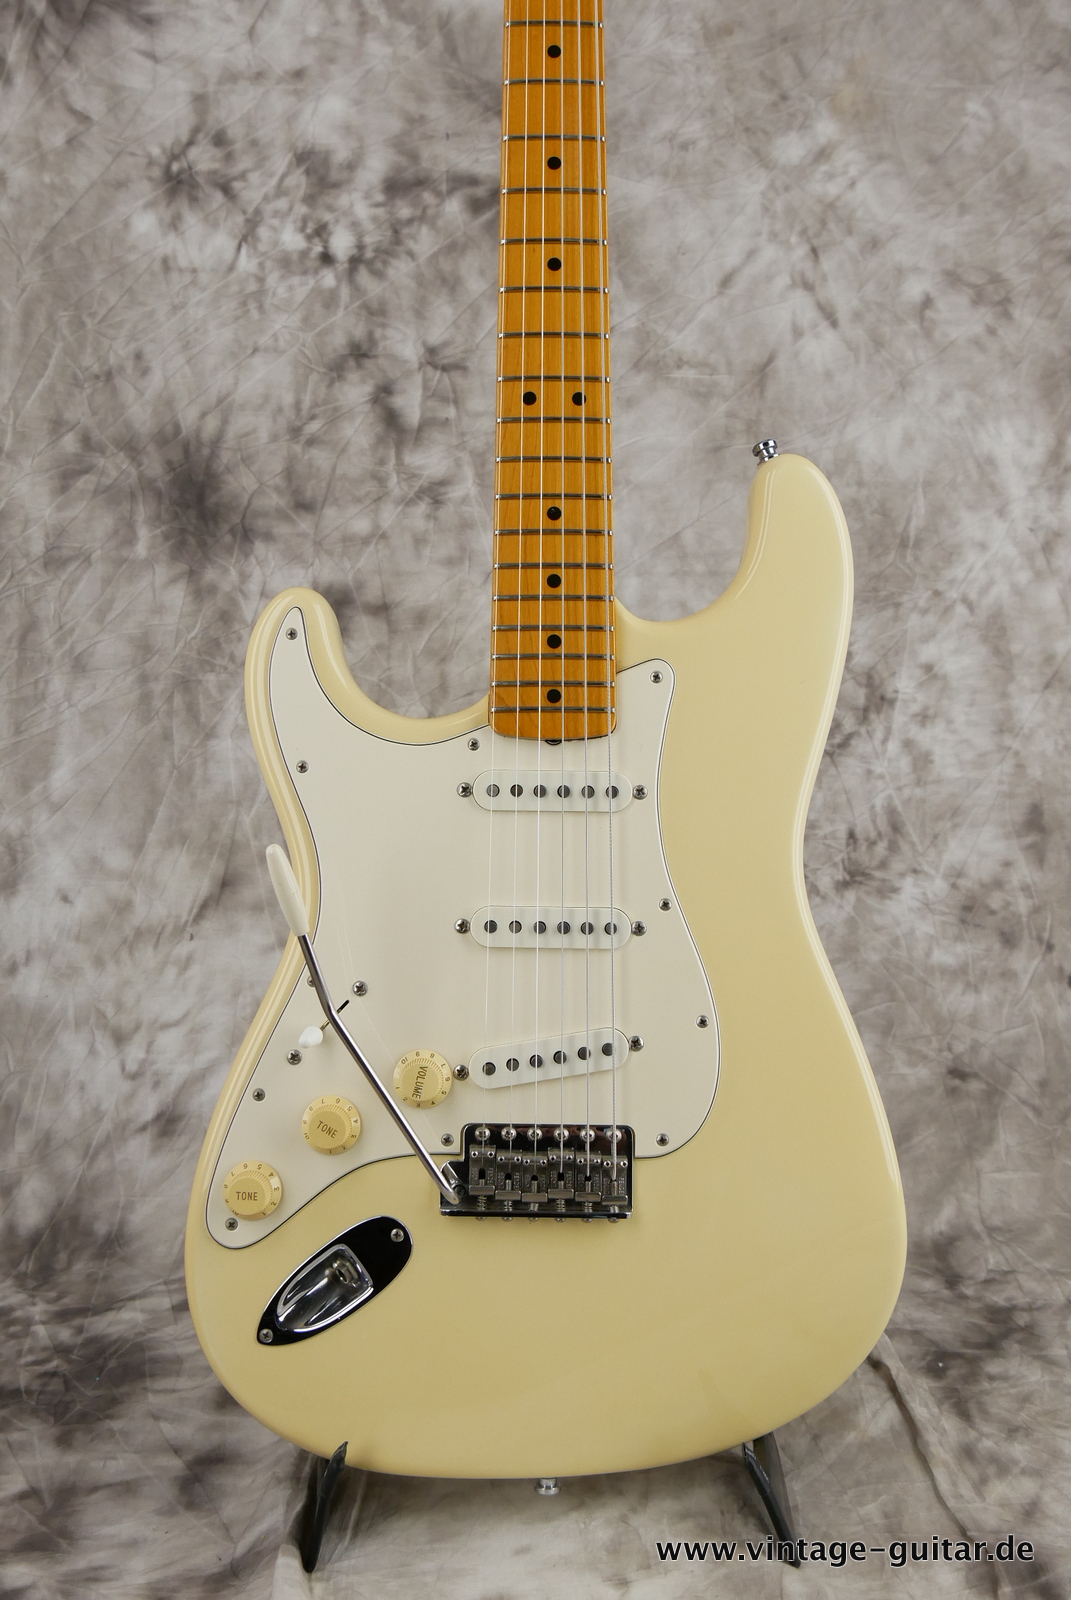 img/vintage/5476/Fender_Stratocaster_Jimi_Hemdrix_Tribute_1997_olympic_white-007.JPG